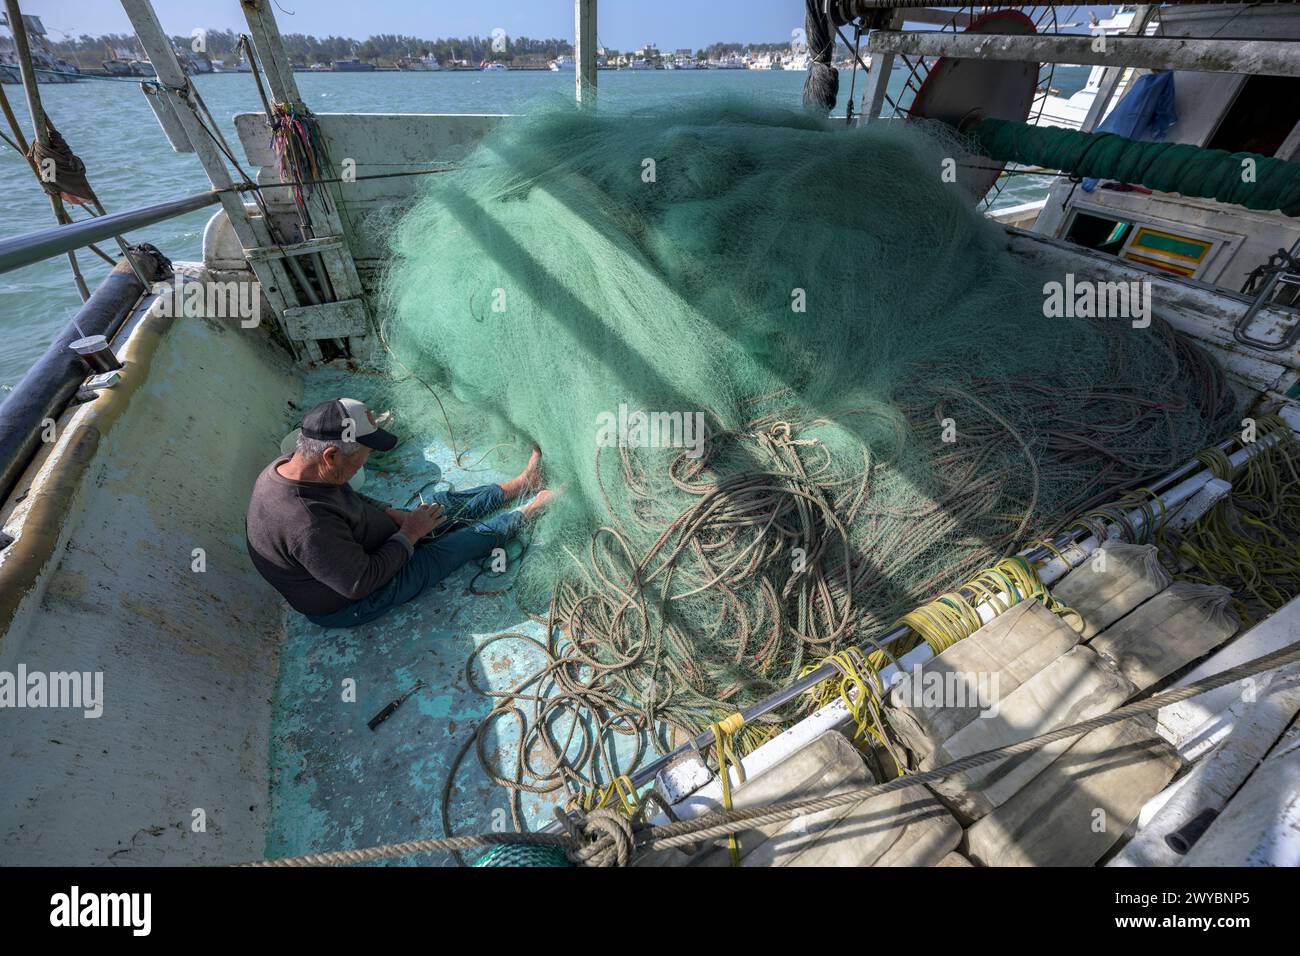 Un pêcheur répare diligemment les filets de pêche sur un pont de bateau, mettant en valeur la vie quotidienne du travail maritime Banque D'Images